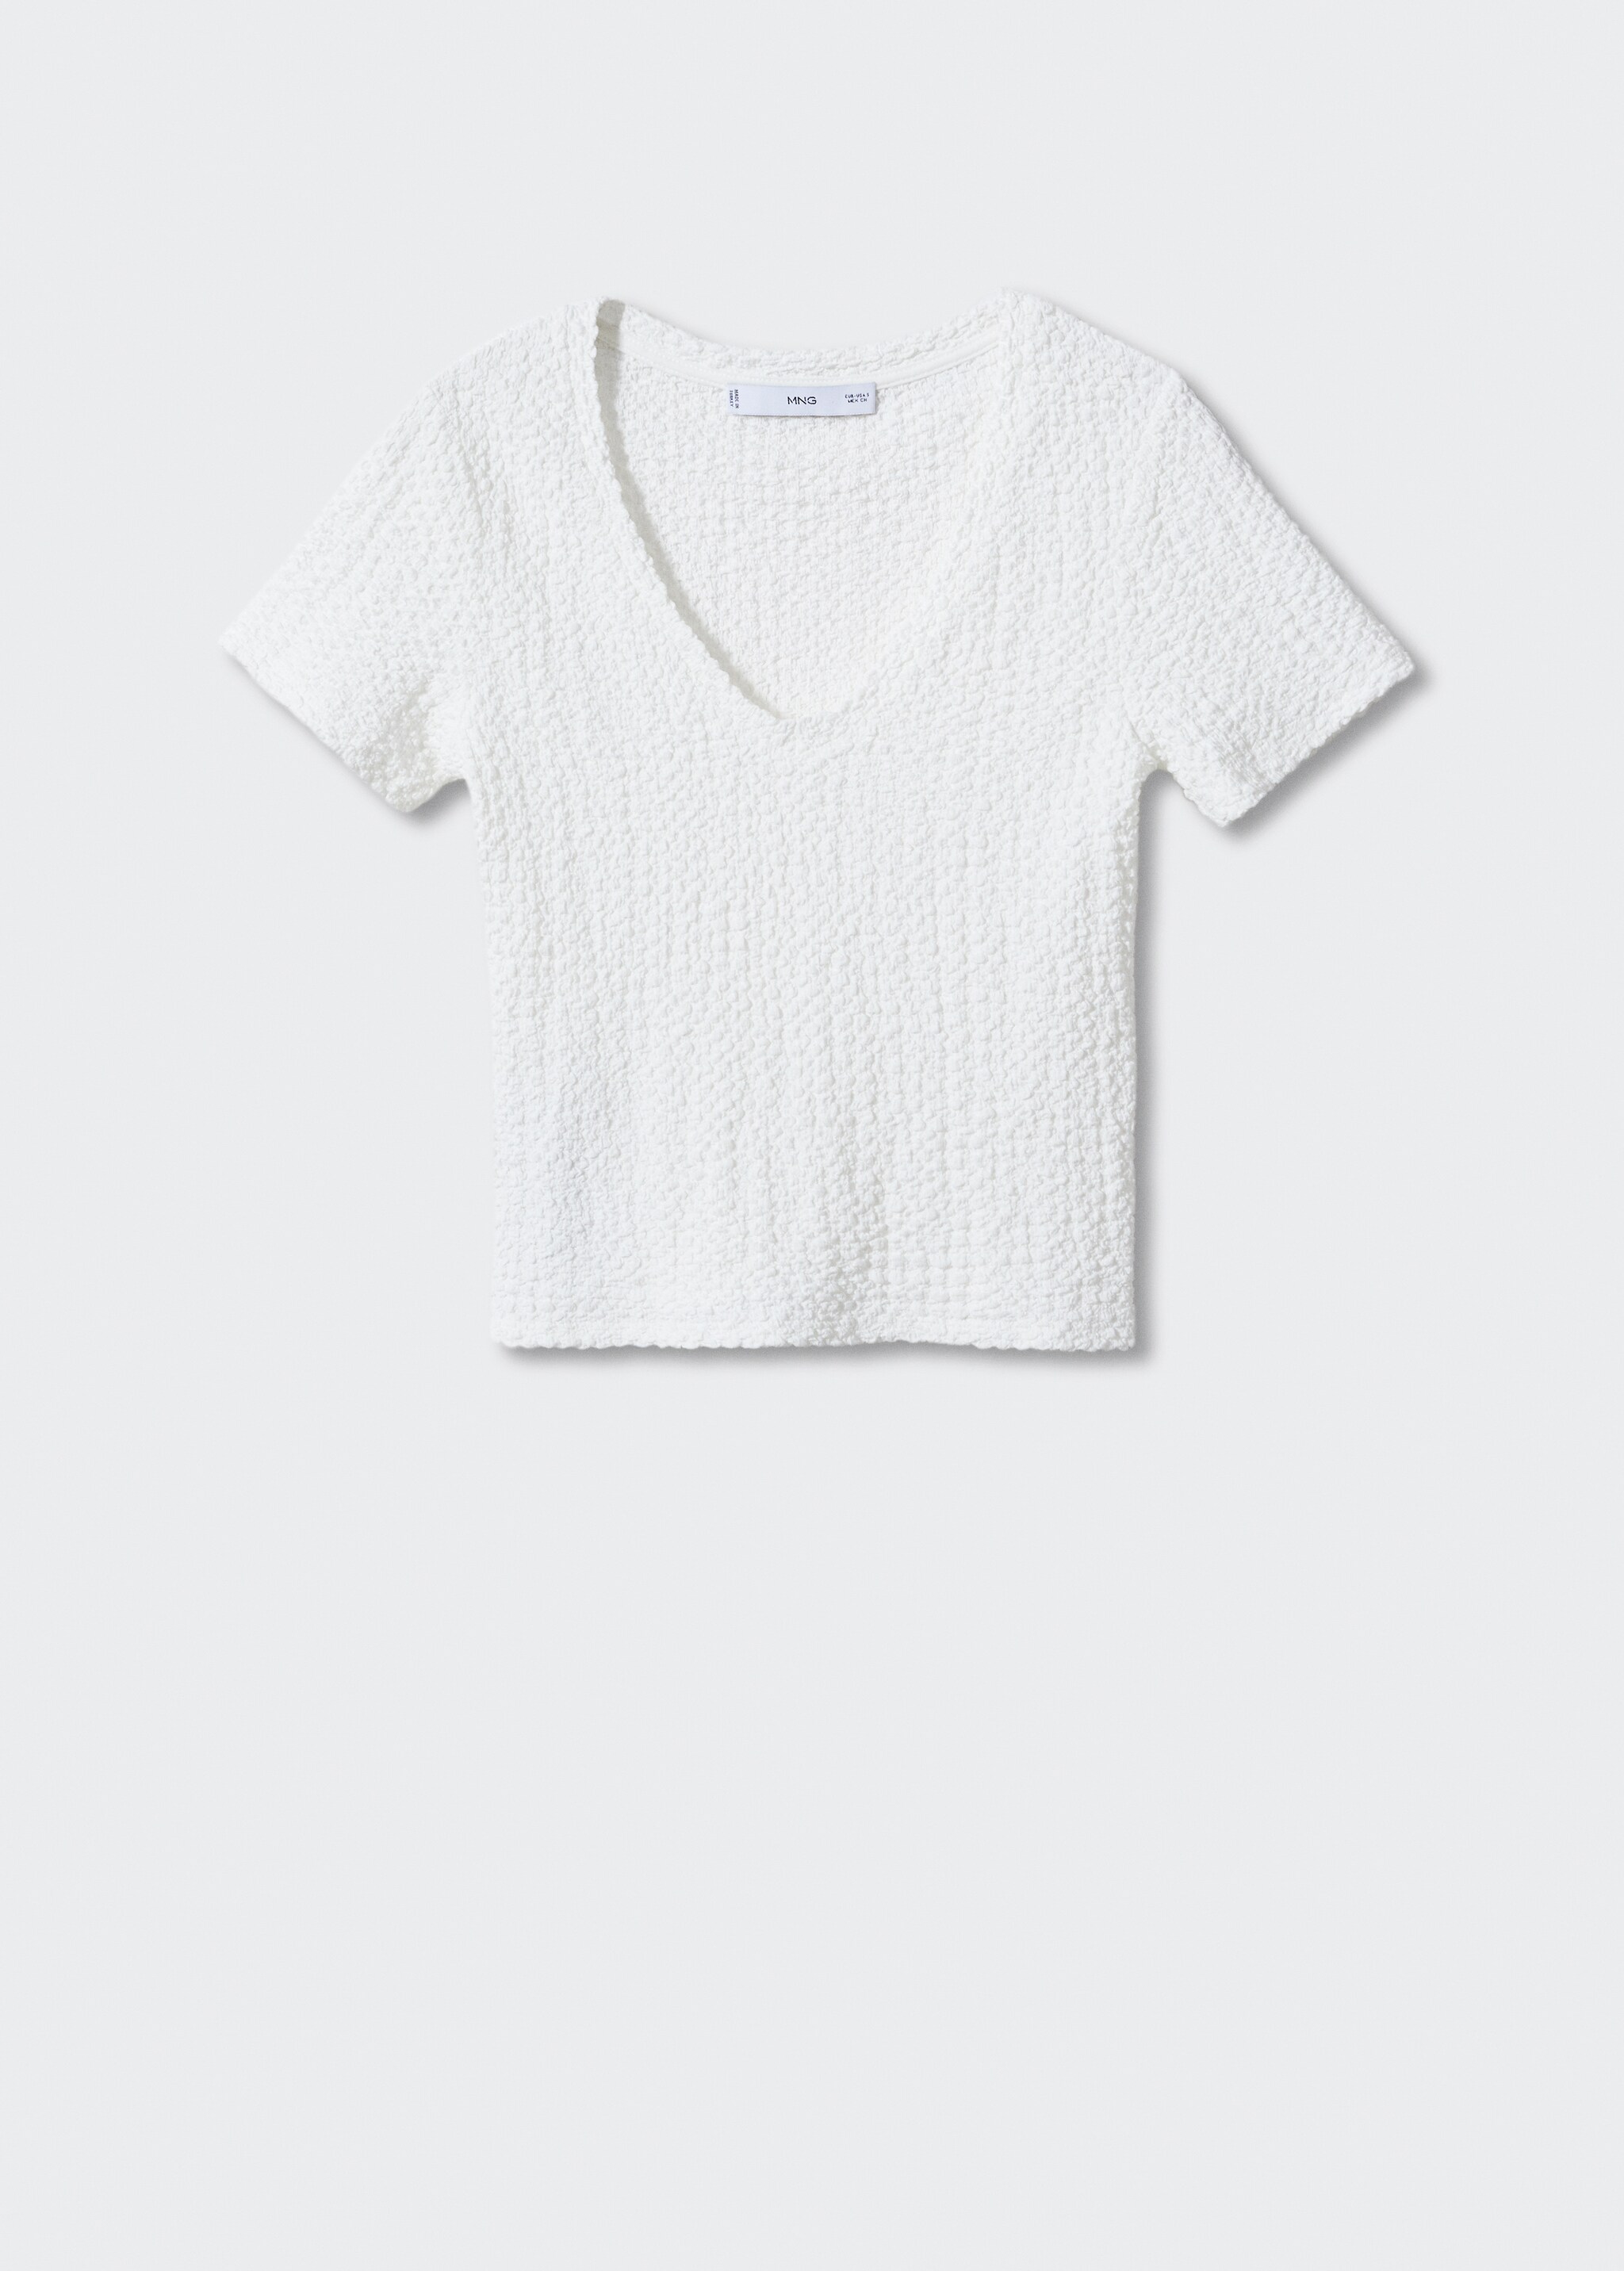 Camiseta textura cuello pico - Artículo sin modelo